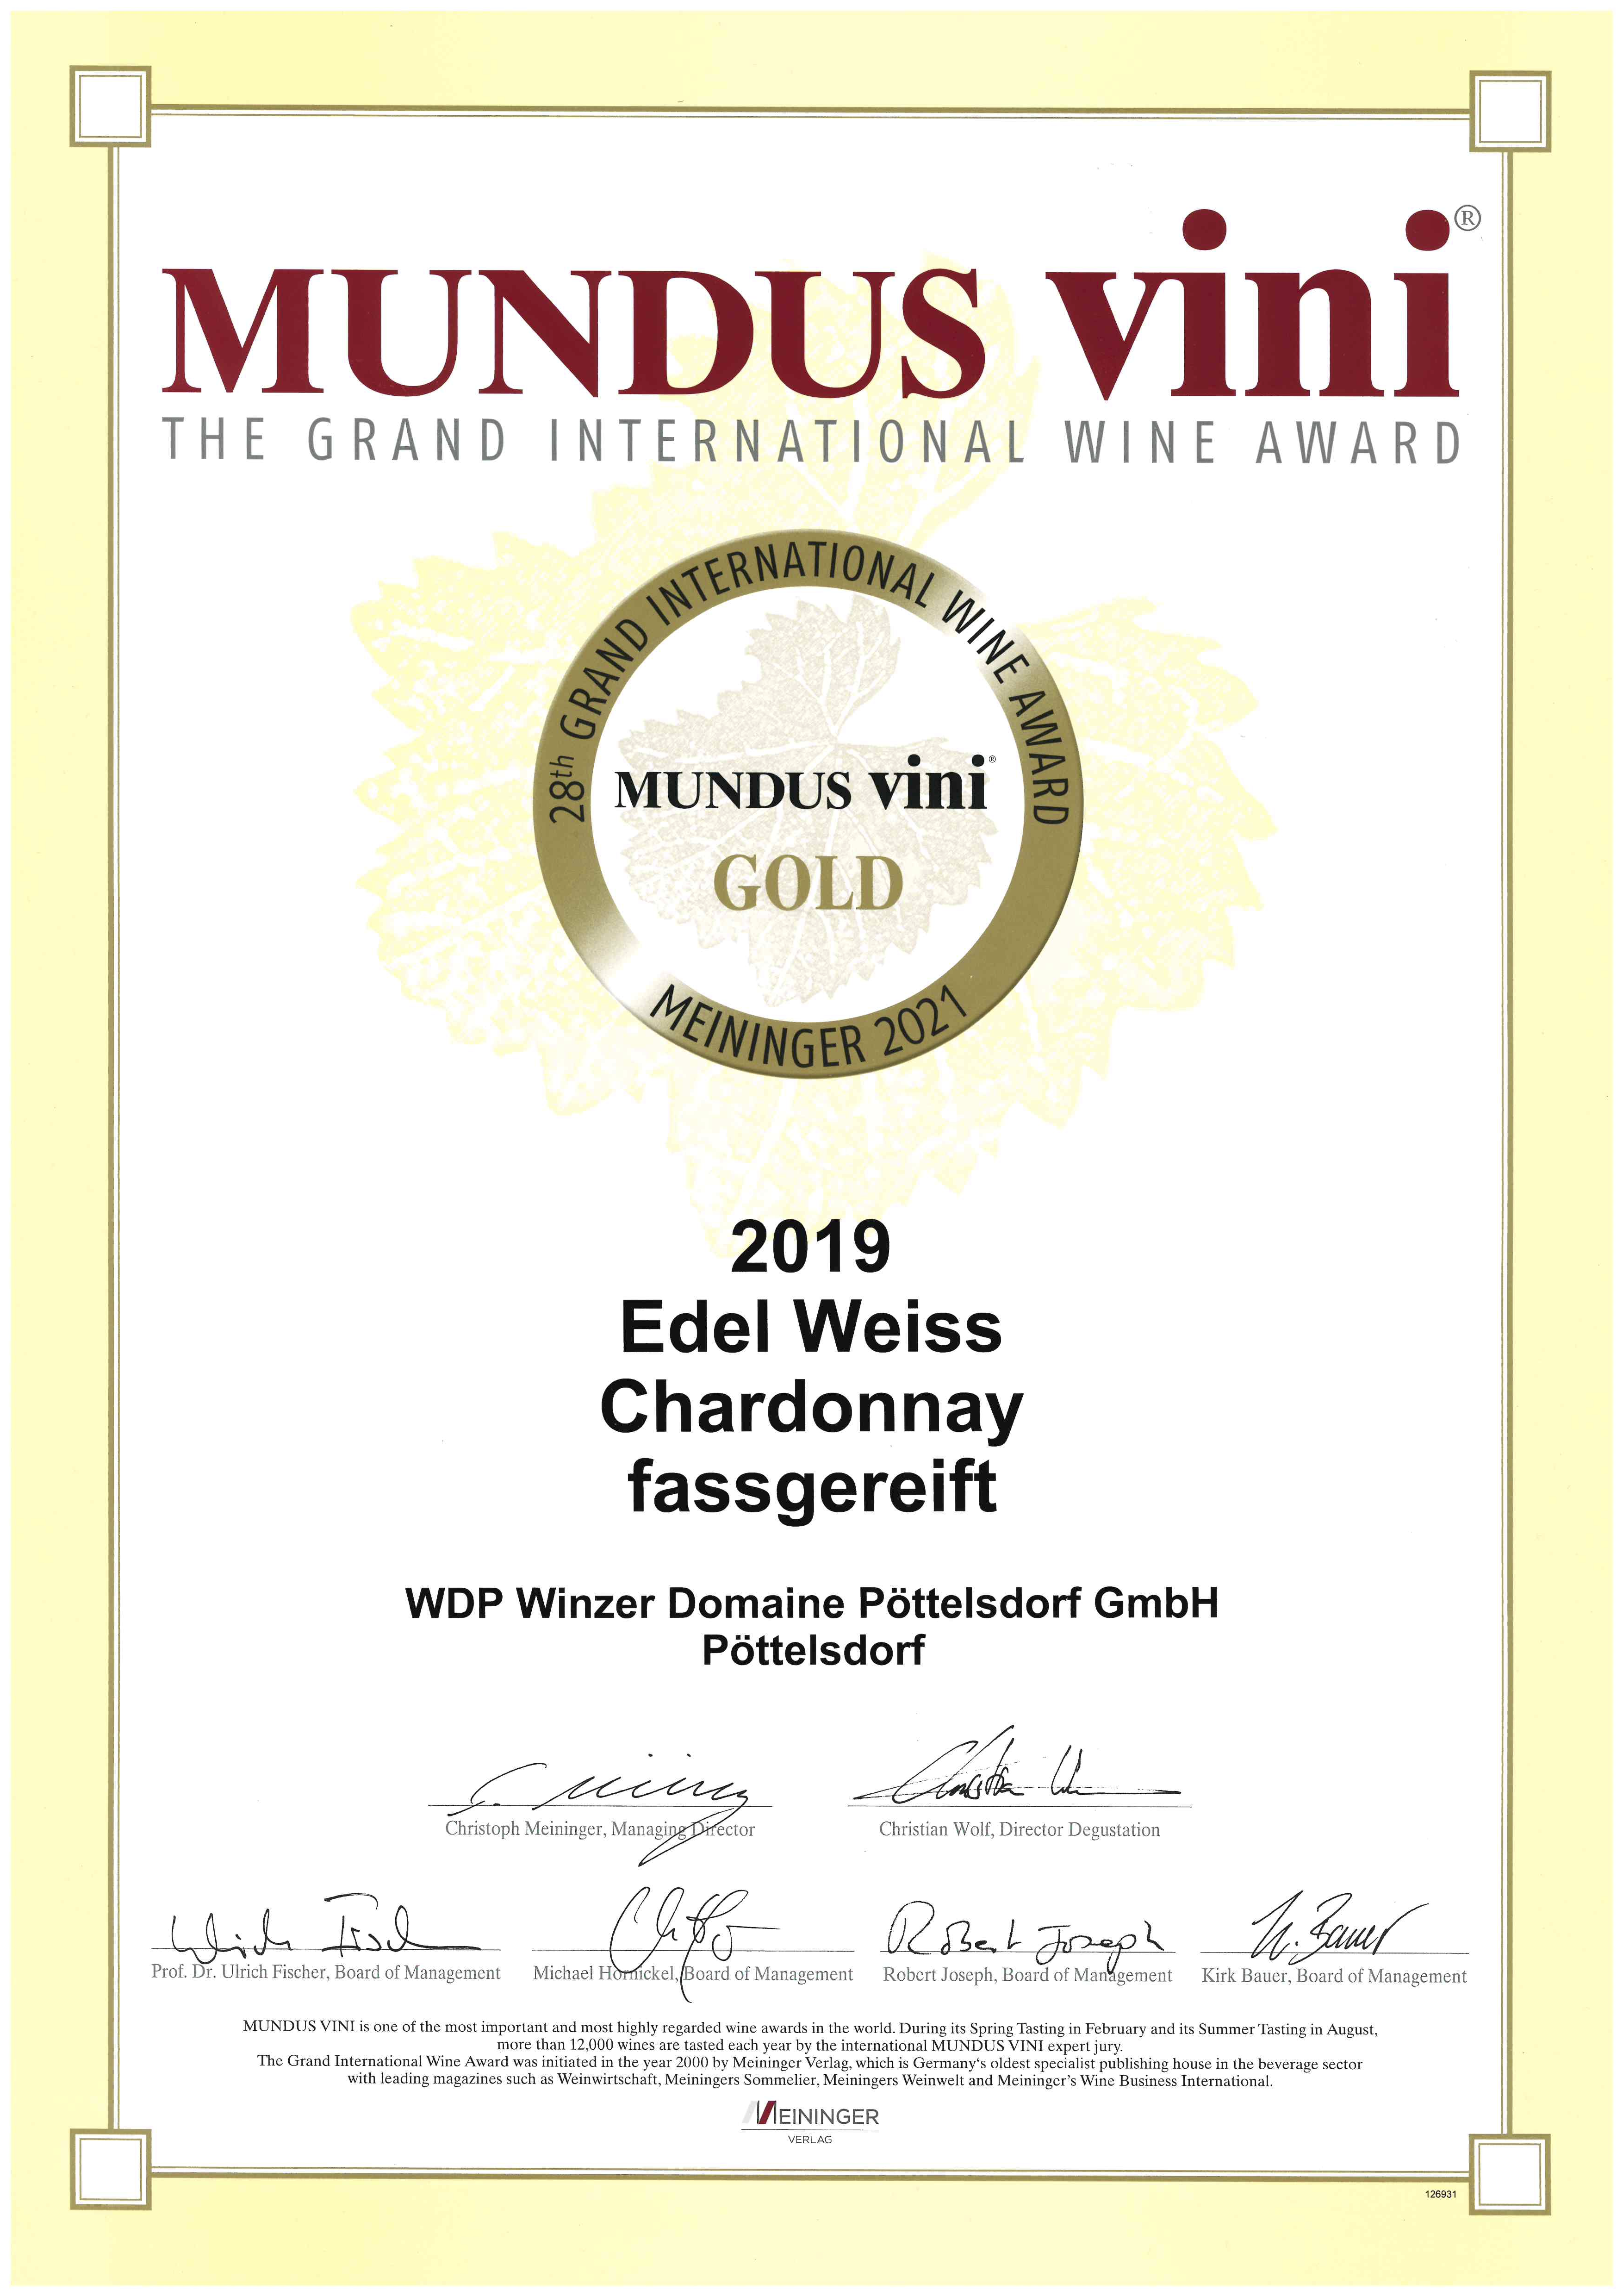 EDEL WEISS Chardonnay 2019, fassgereift